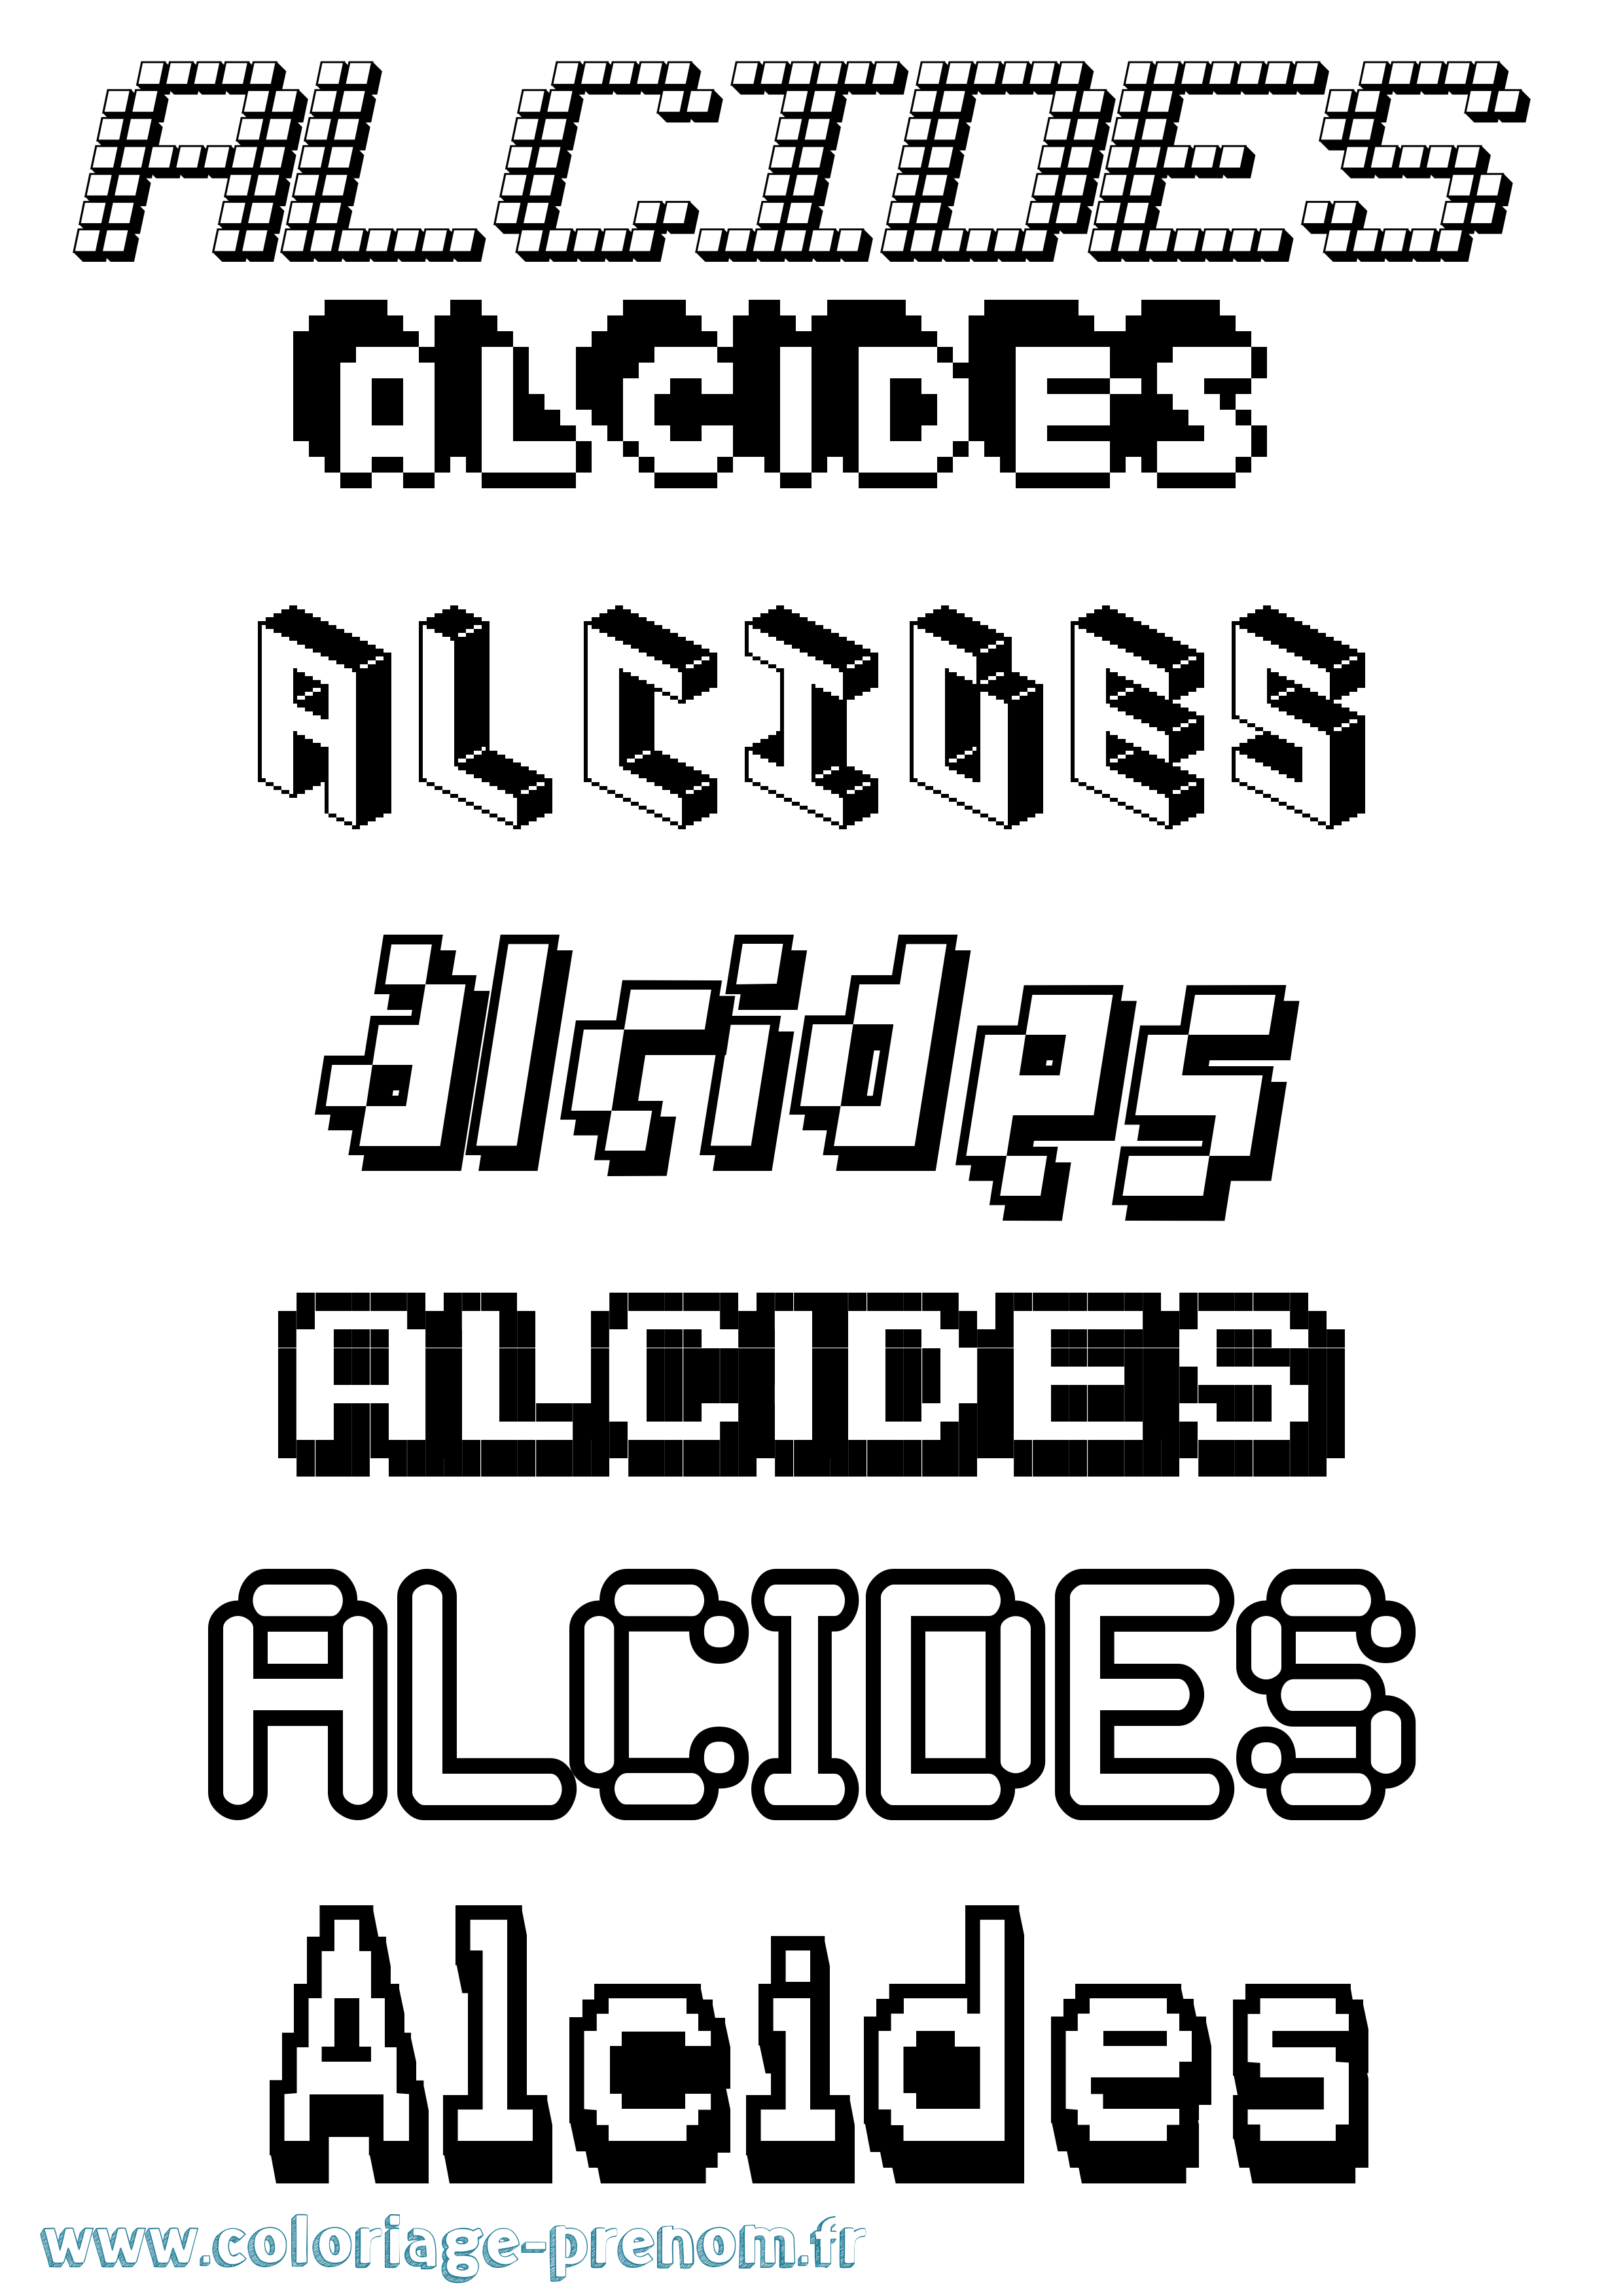 Coloriage prénom Alcides Pixel